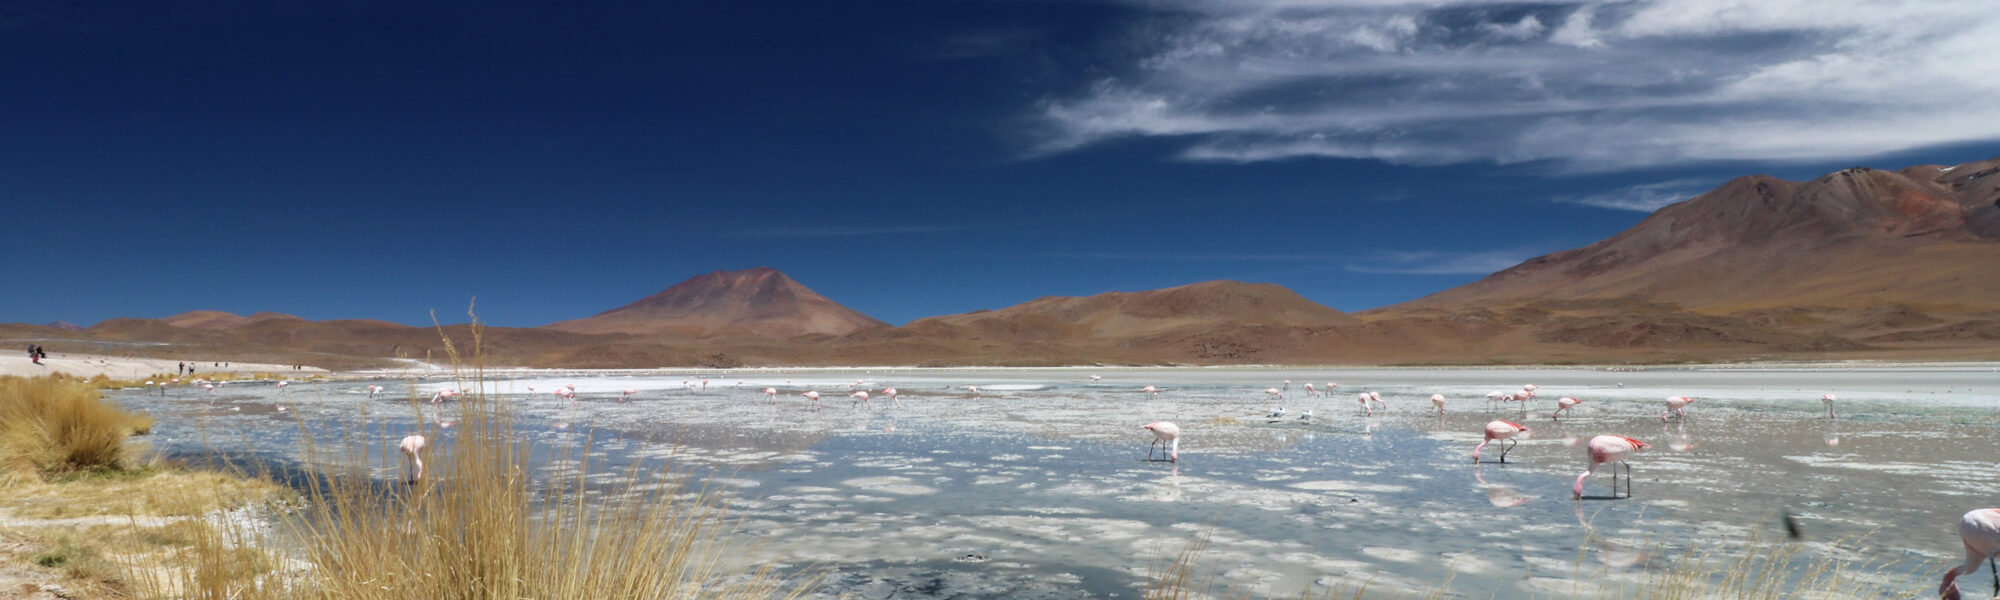 Bolivia 2016 - Dag 11 - Laguna Charcota